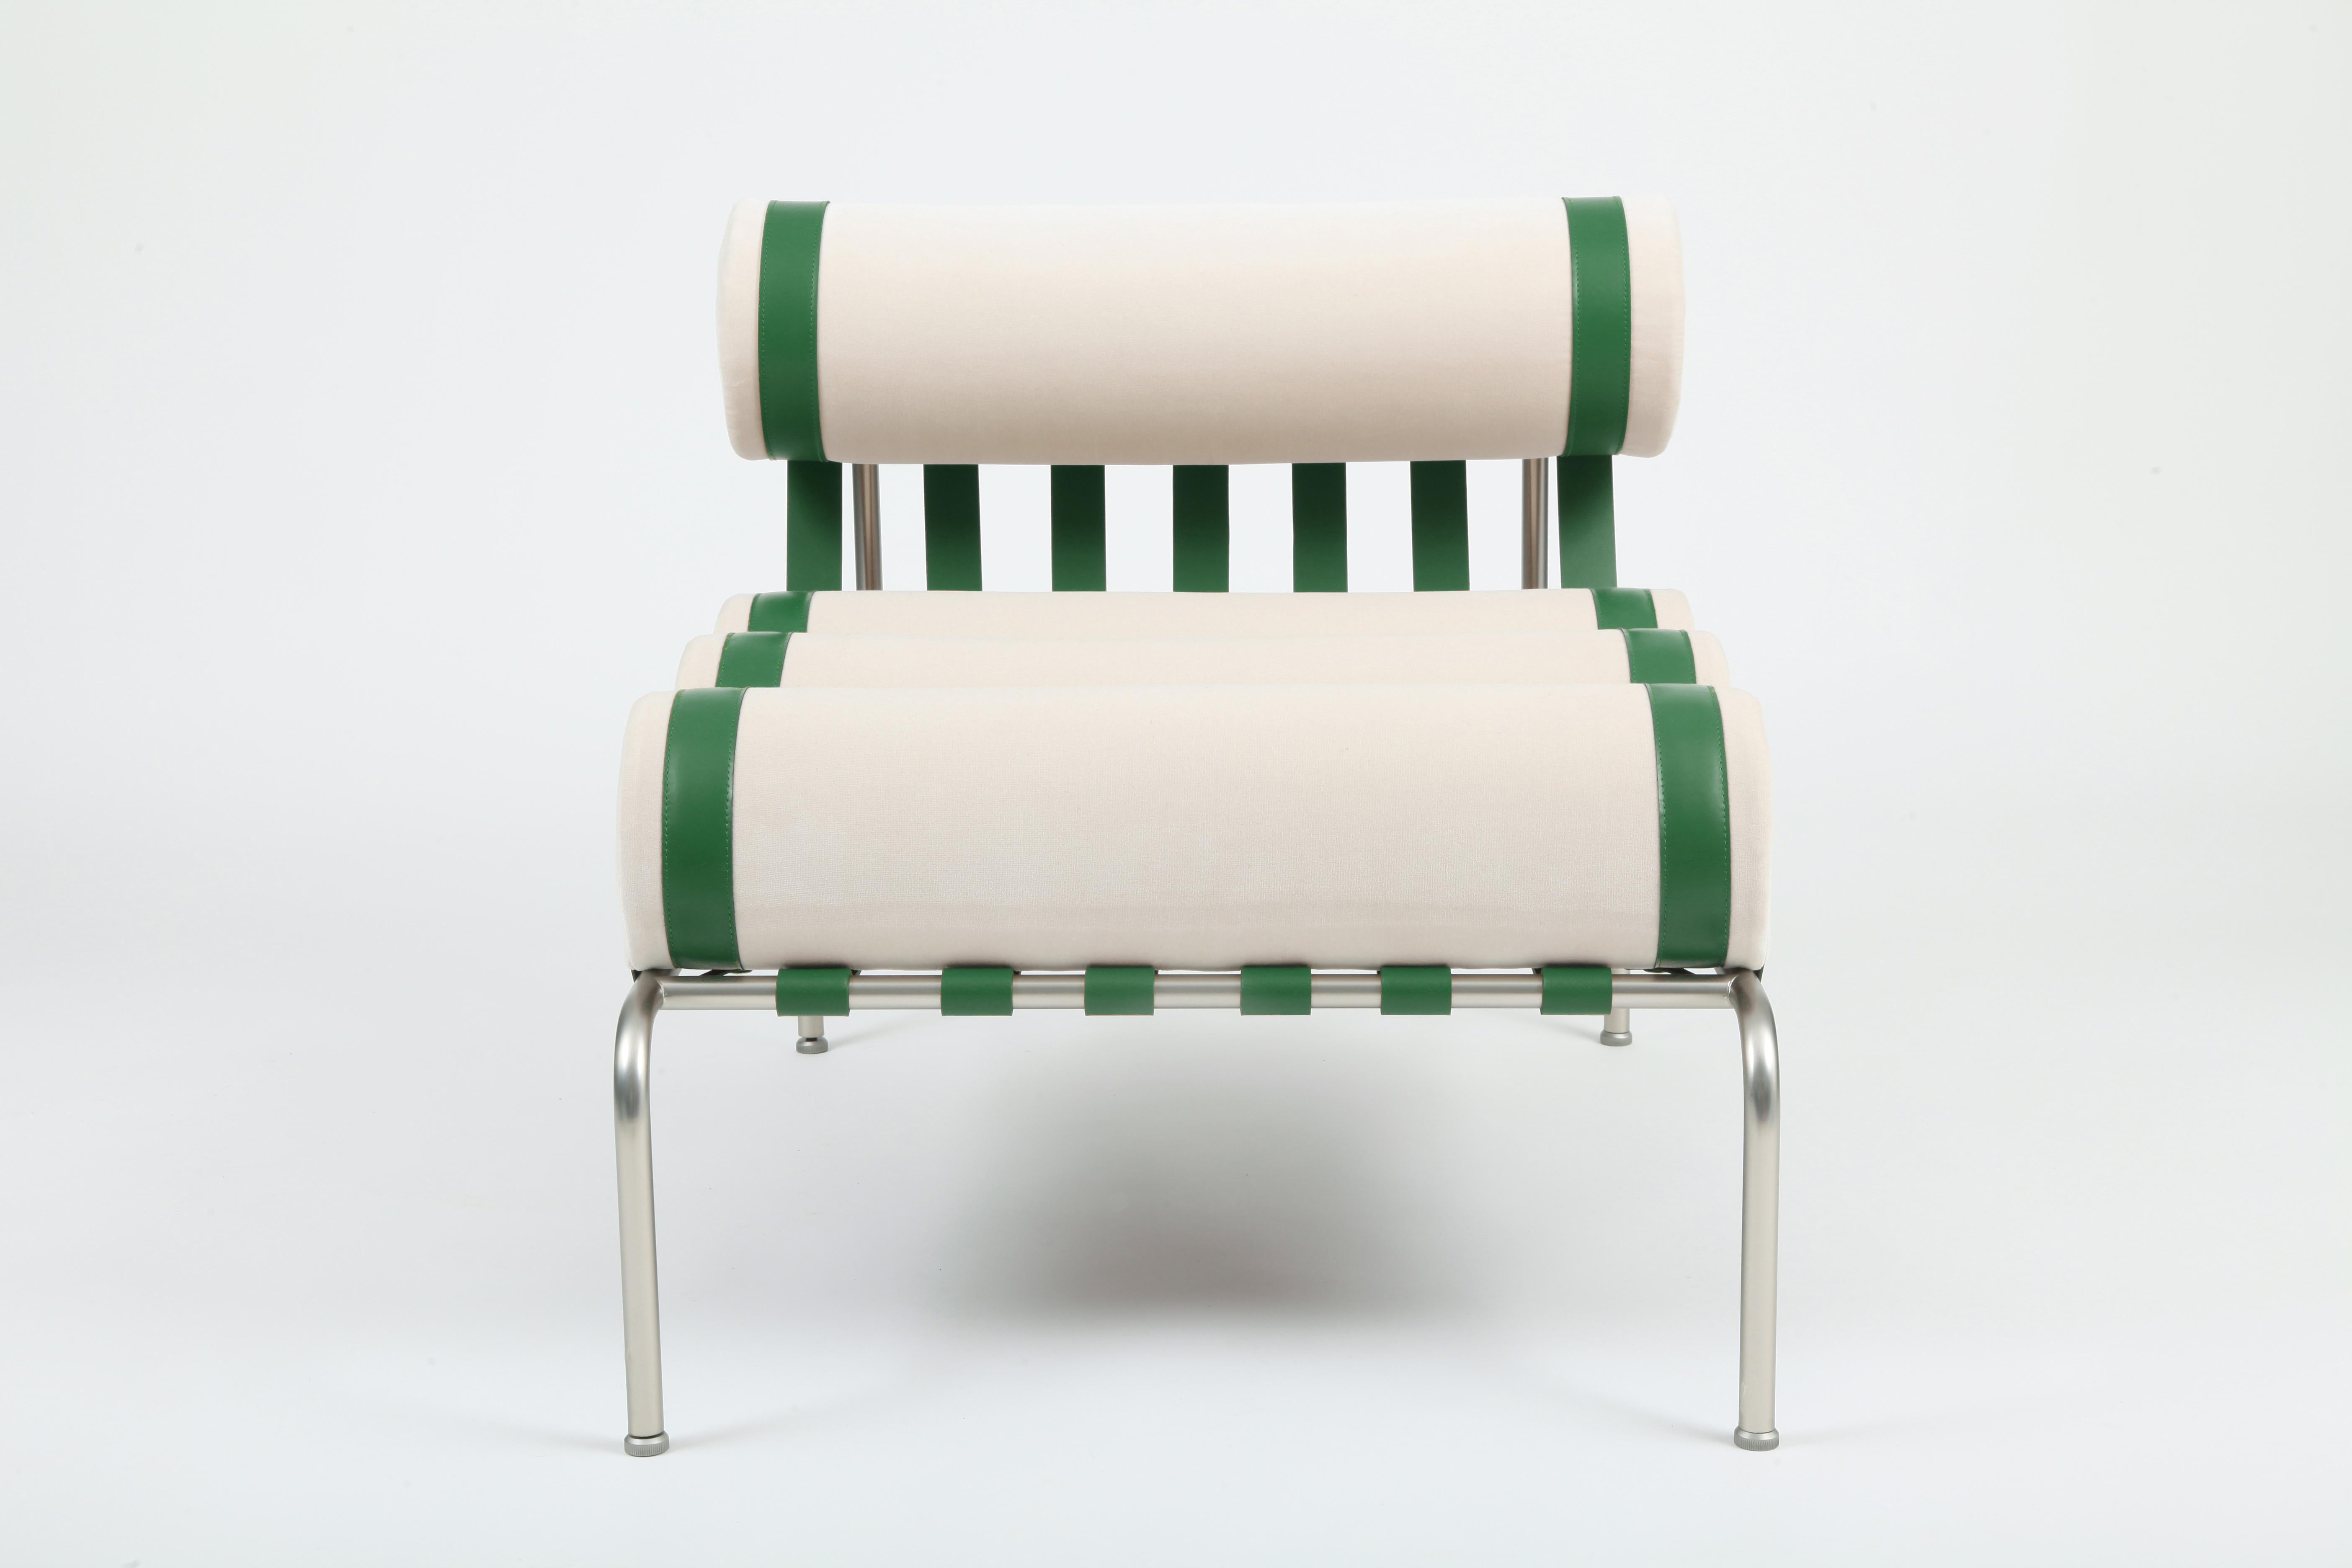 Der Sessel Kylíndo ist ein Lounge-Sessel für den Innenbereich. 
Der niedrige Sitz schafft ein gemütliches und intimes Ambiente. Die feinen Lederbänder sind das Ergebnis eines manuellen Prozesses, der Ästhetik und Halt für die Kissen des